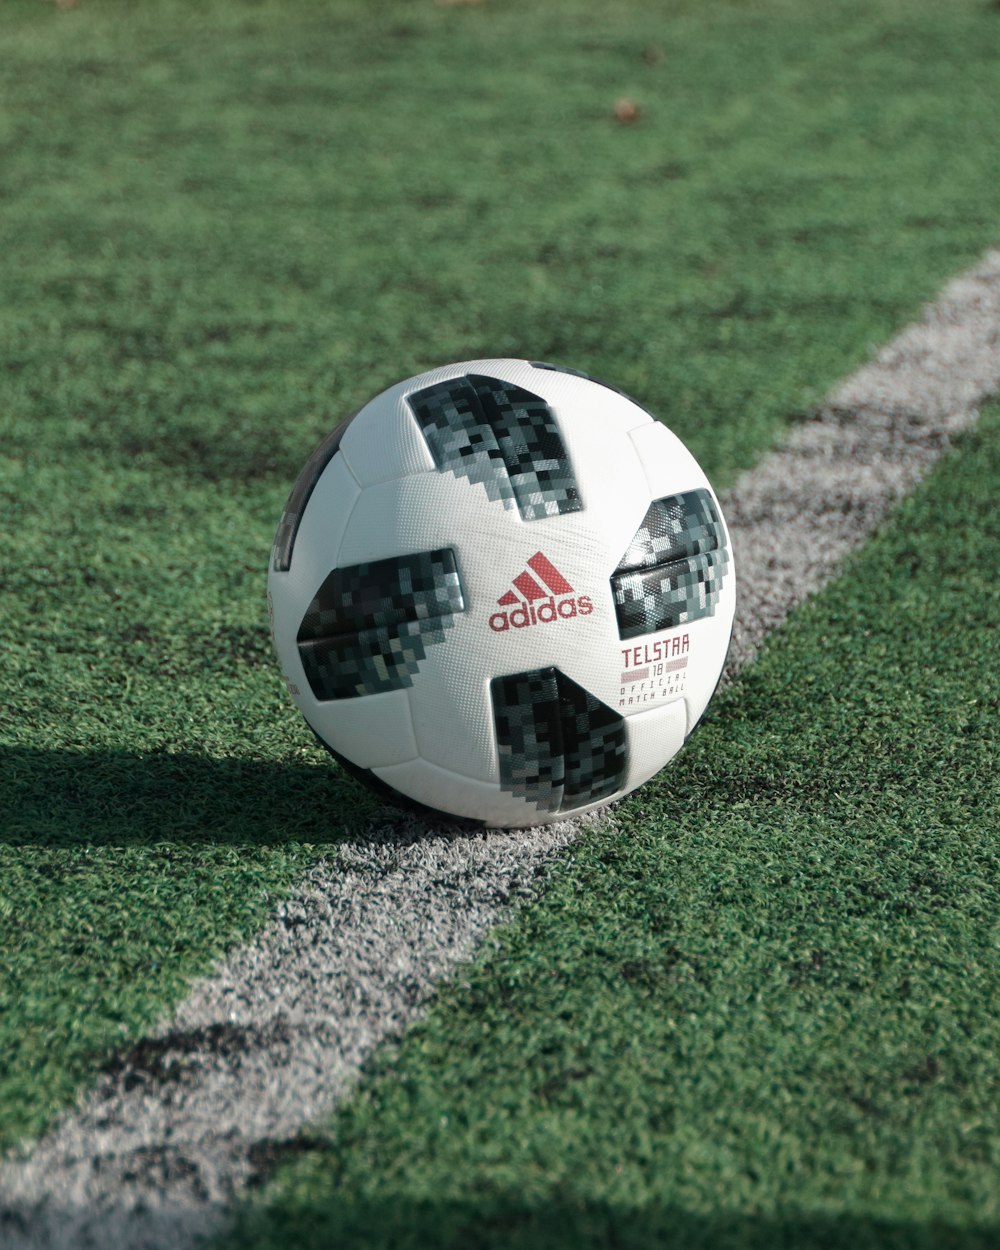 Fotografía de primer plano de la pelota de fútbol adidas en el campo